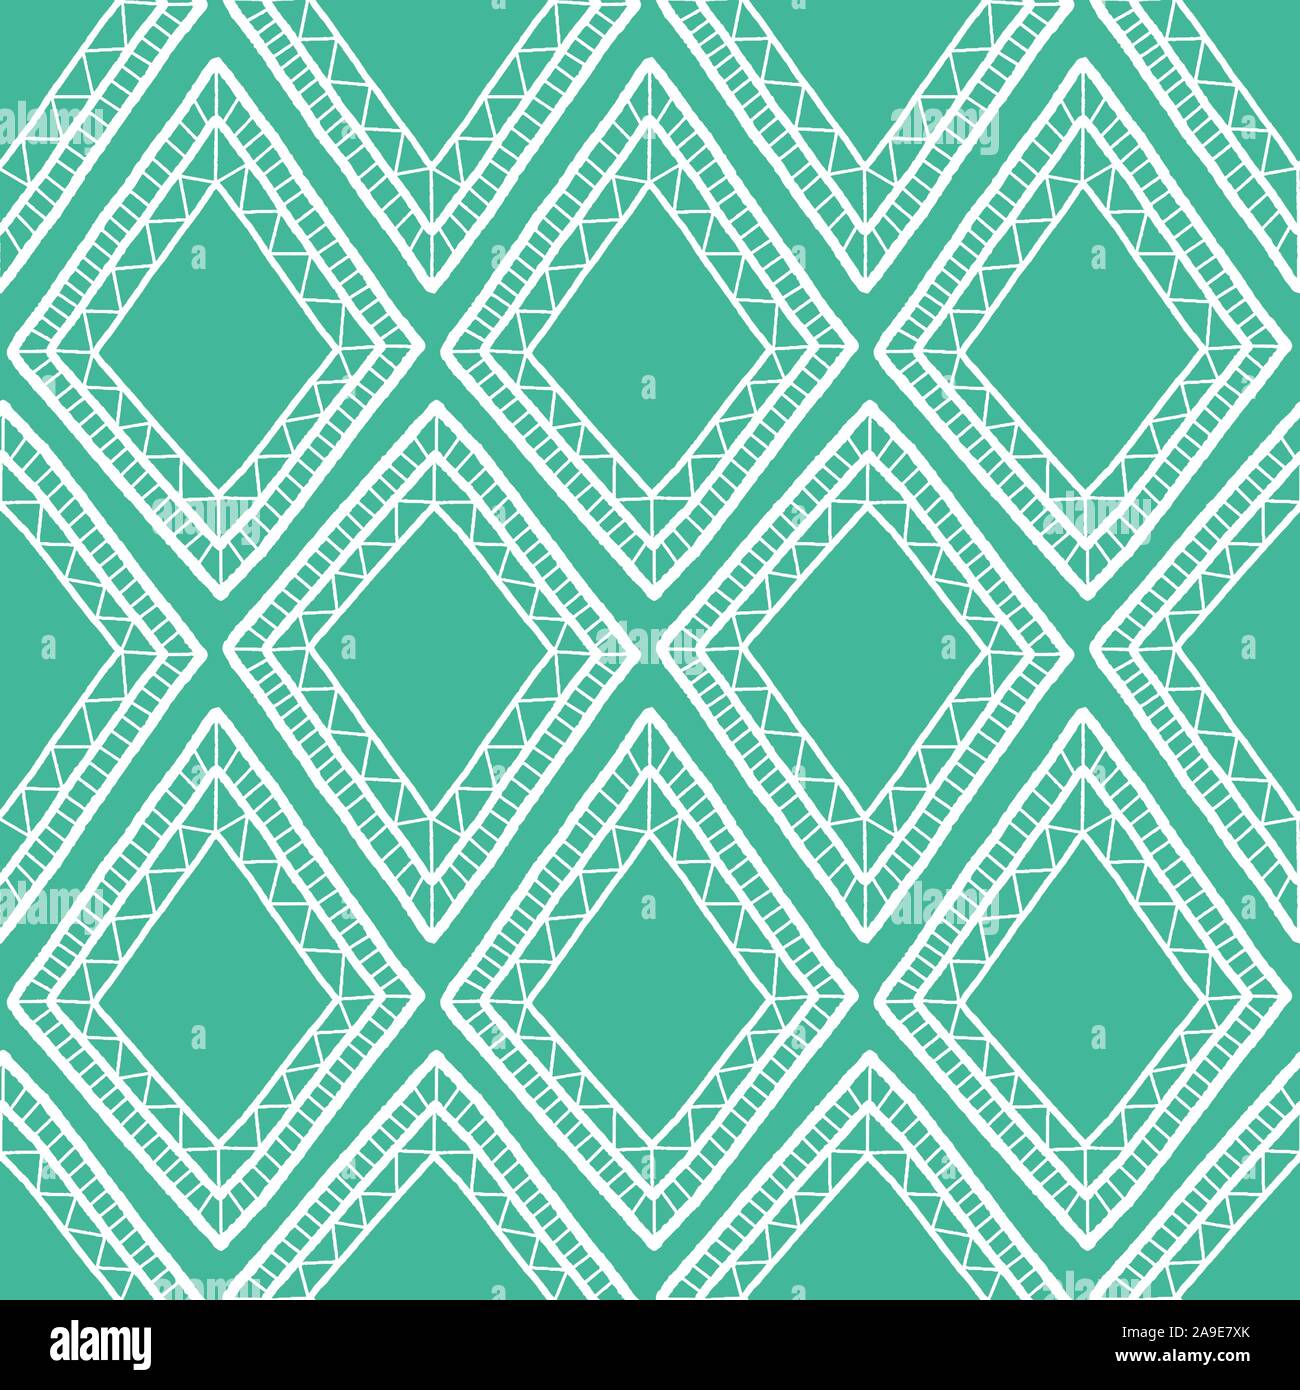 Abstrakte diamond Vektor nahtlose Repeat Pattern Hintergrund in Grün und Weiß. Stock Vektor